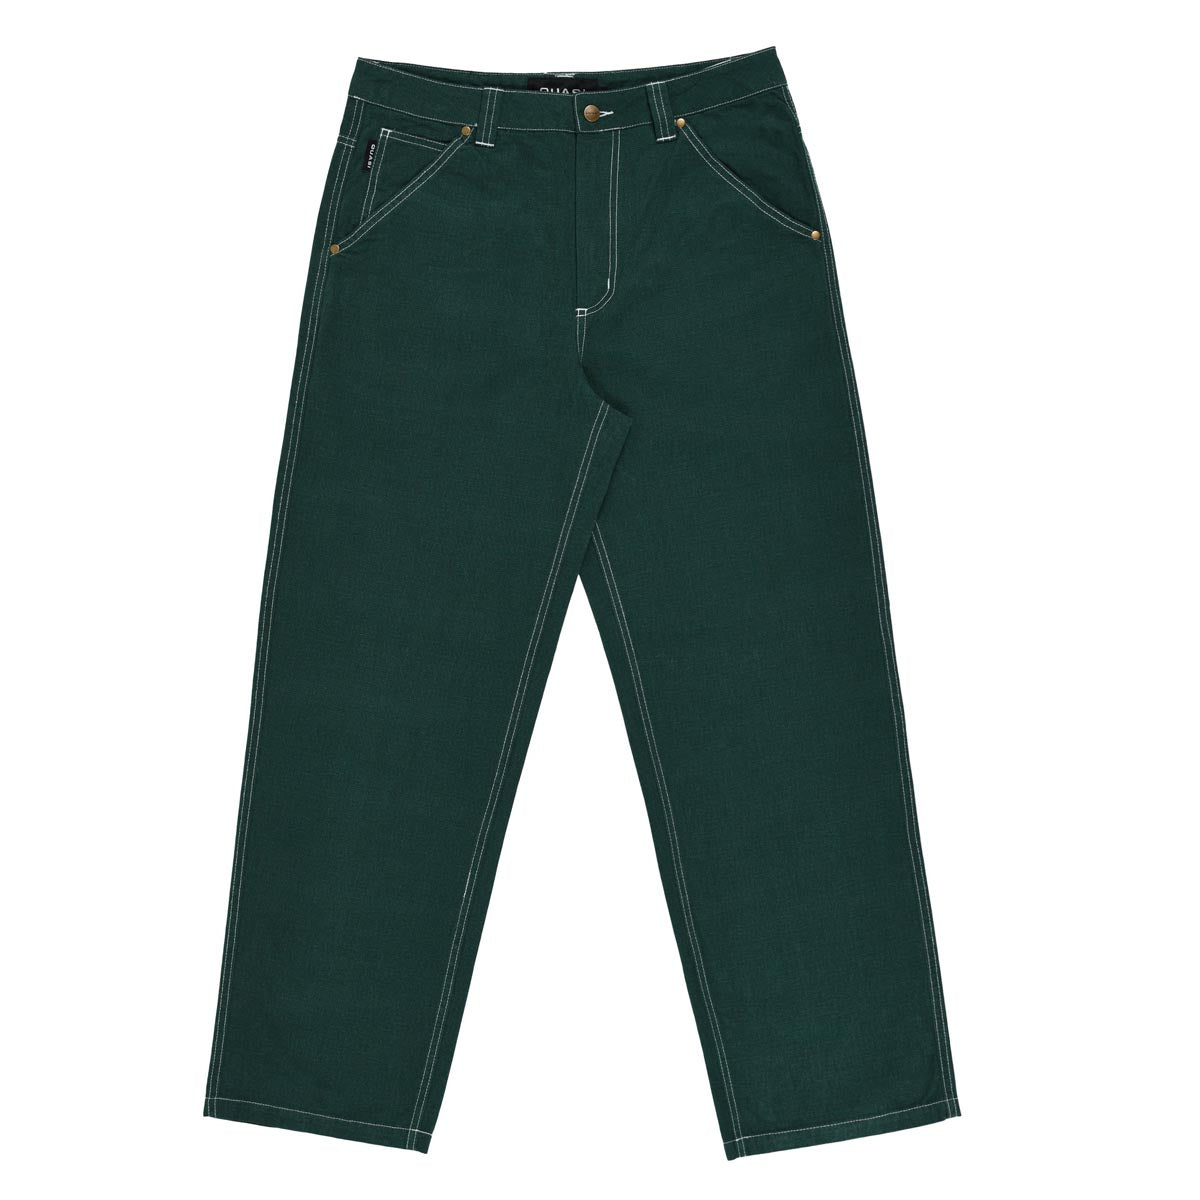 Quasi 102 Jeans - Evergreen image 1